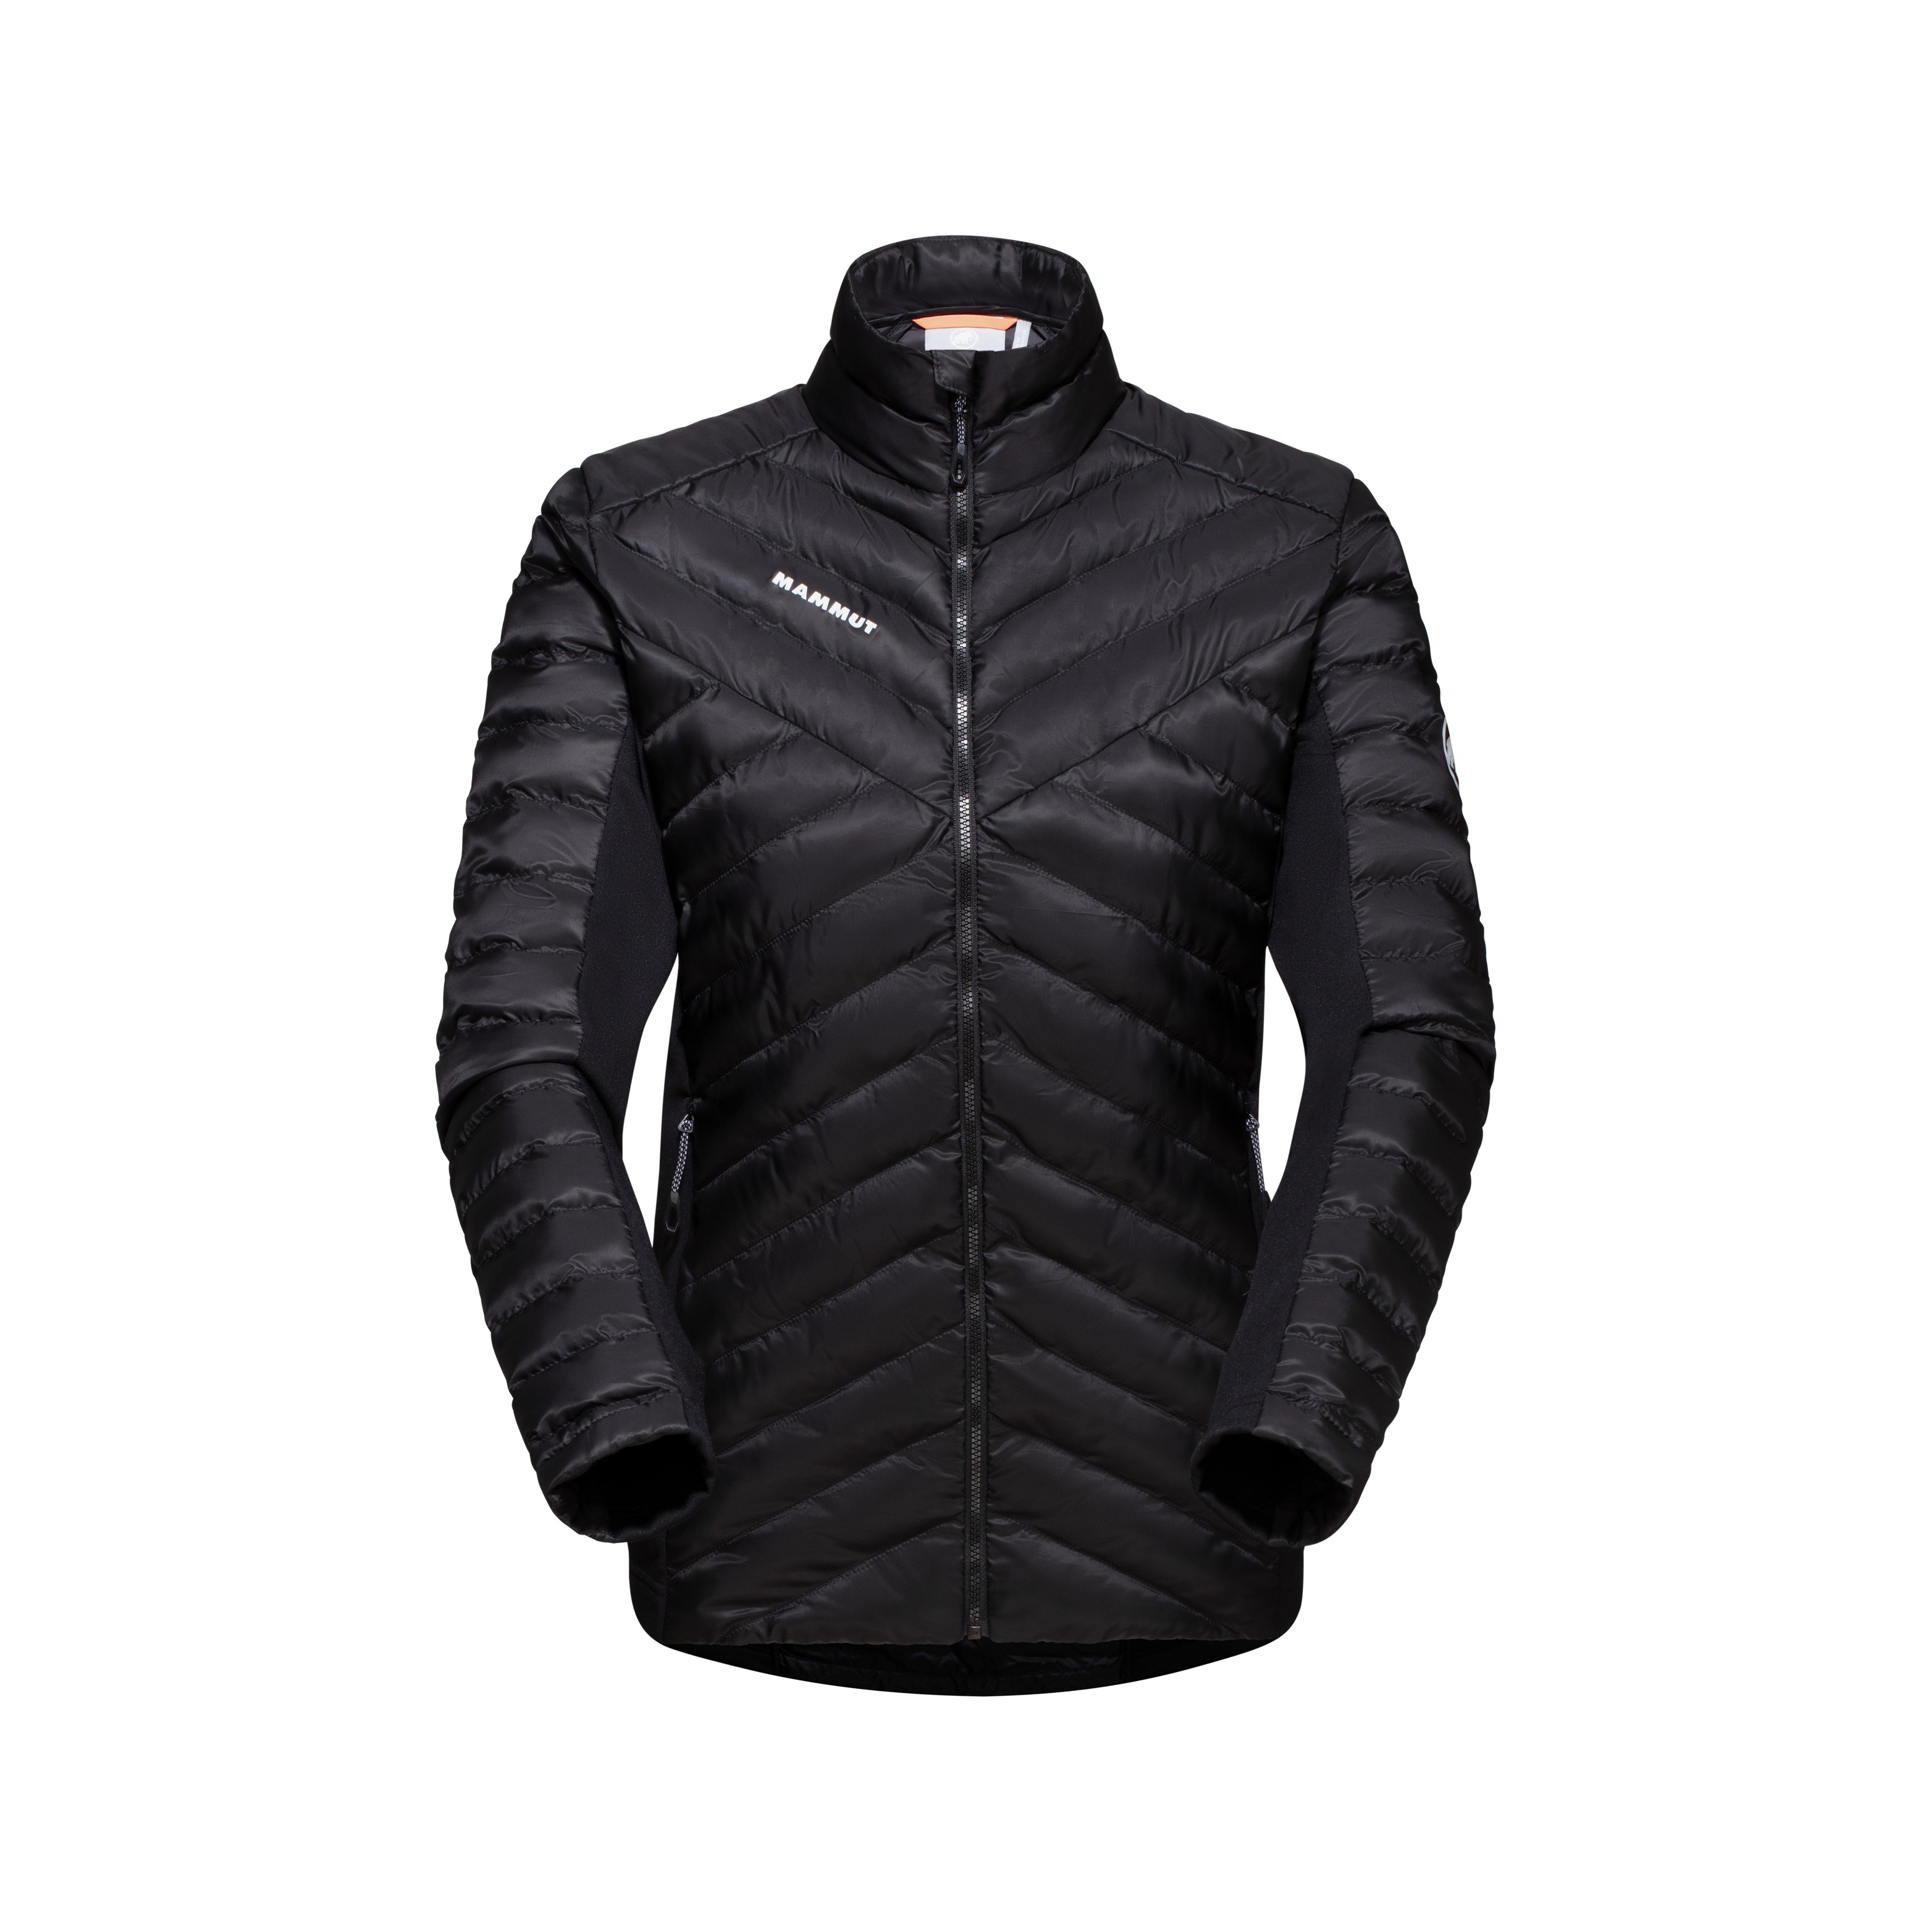 Albula IN Hybrid Jacket Women - black, S product image